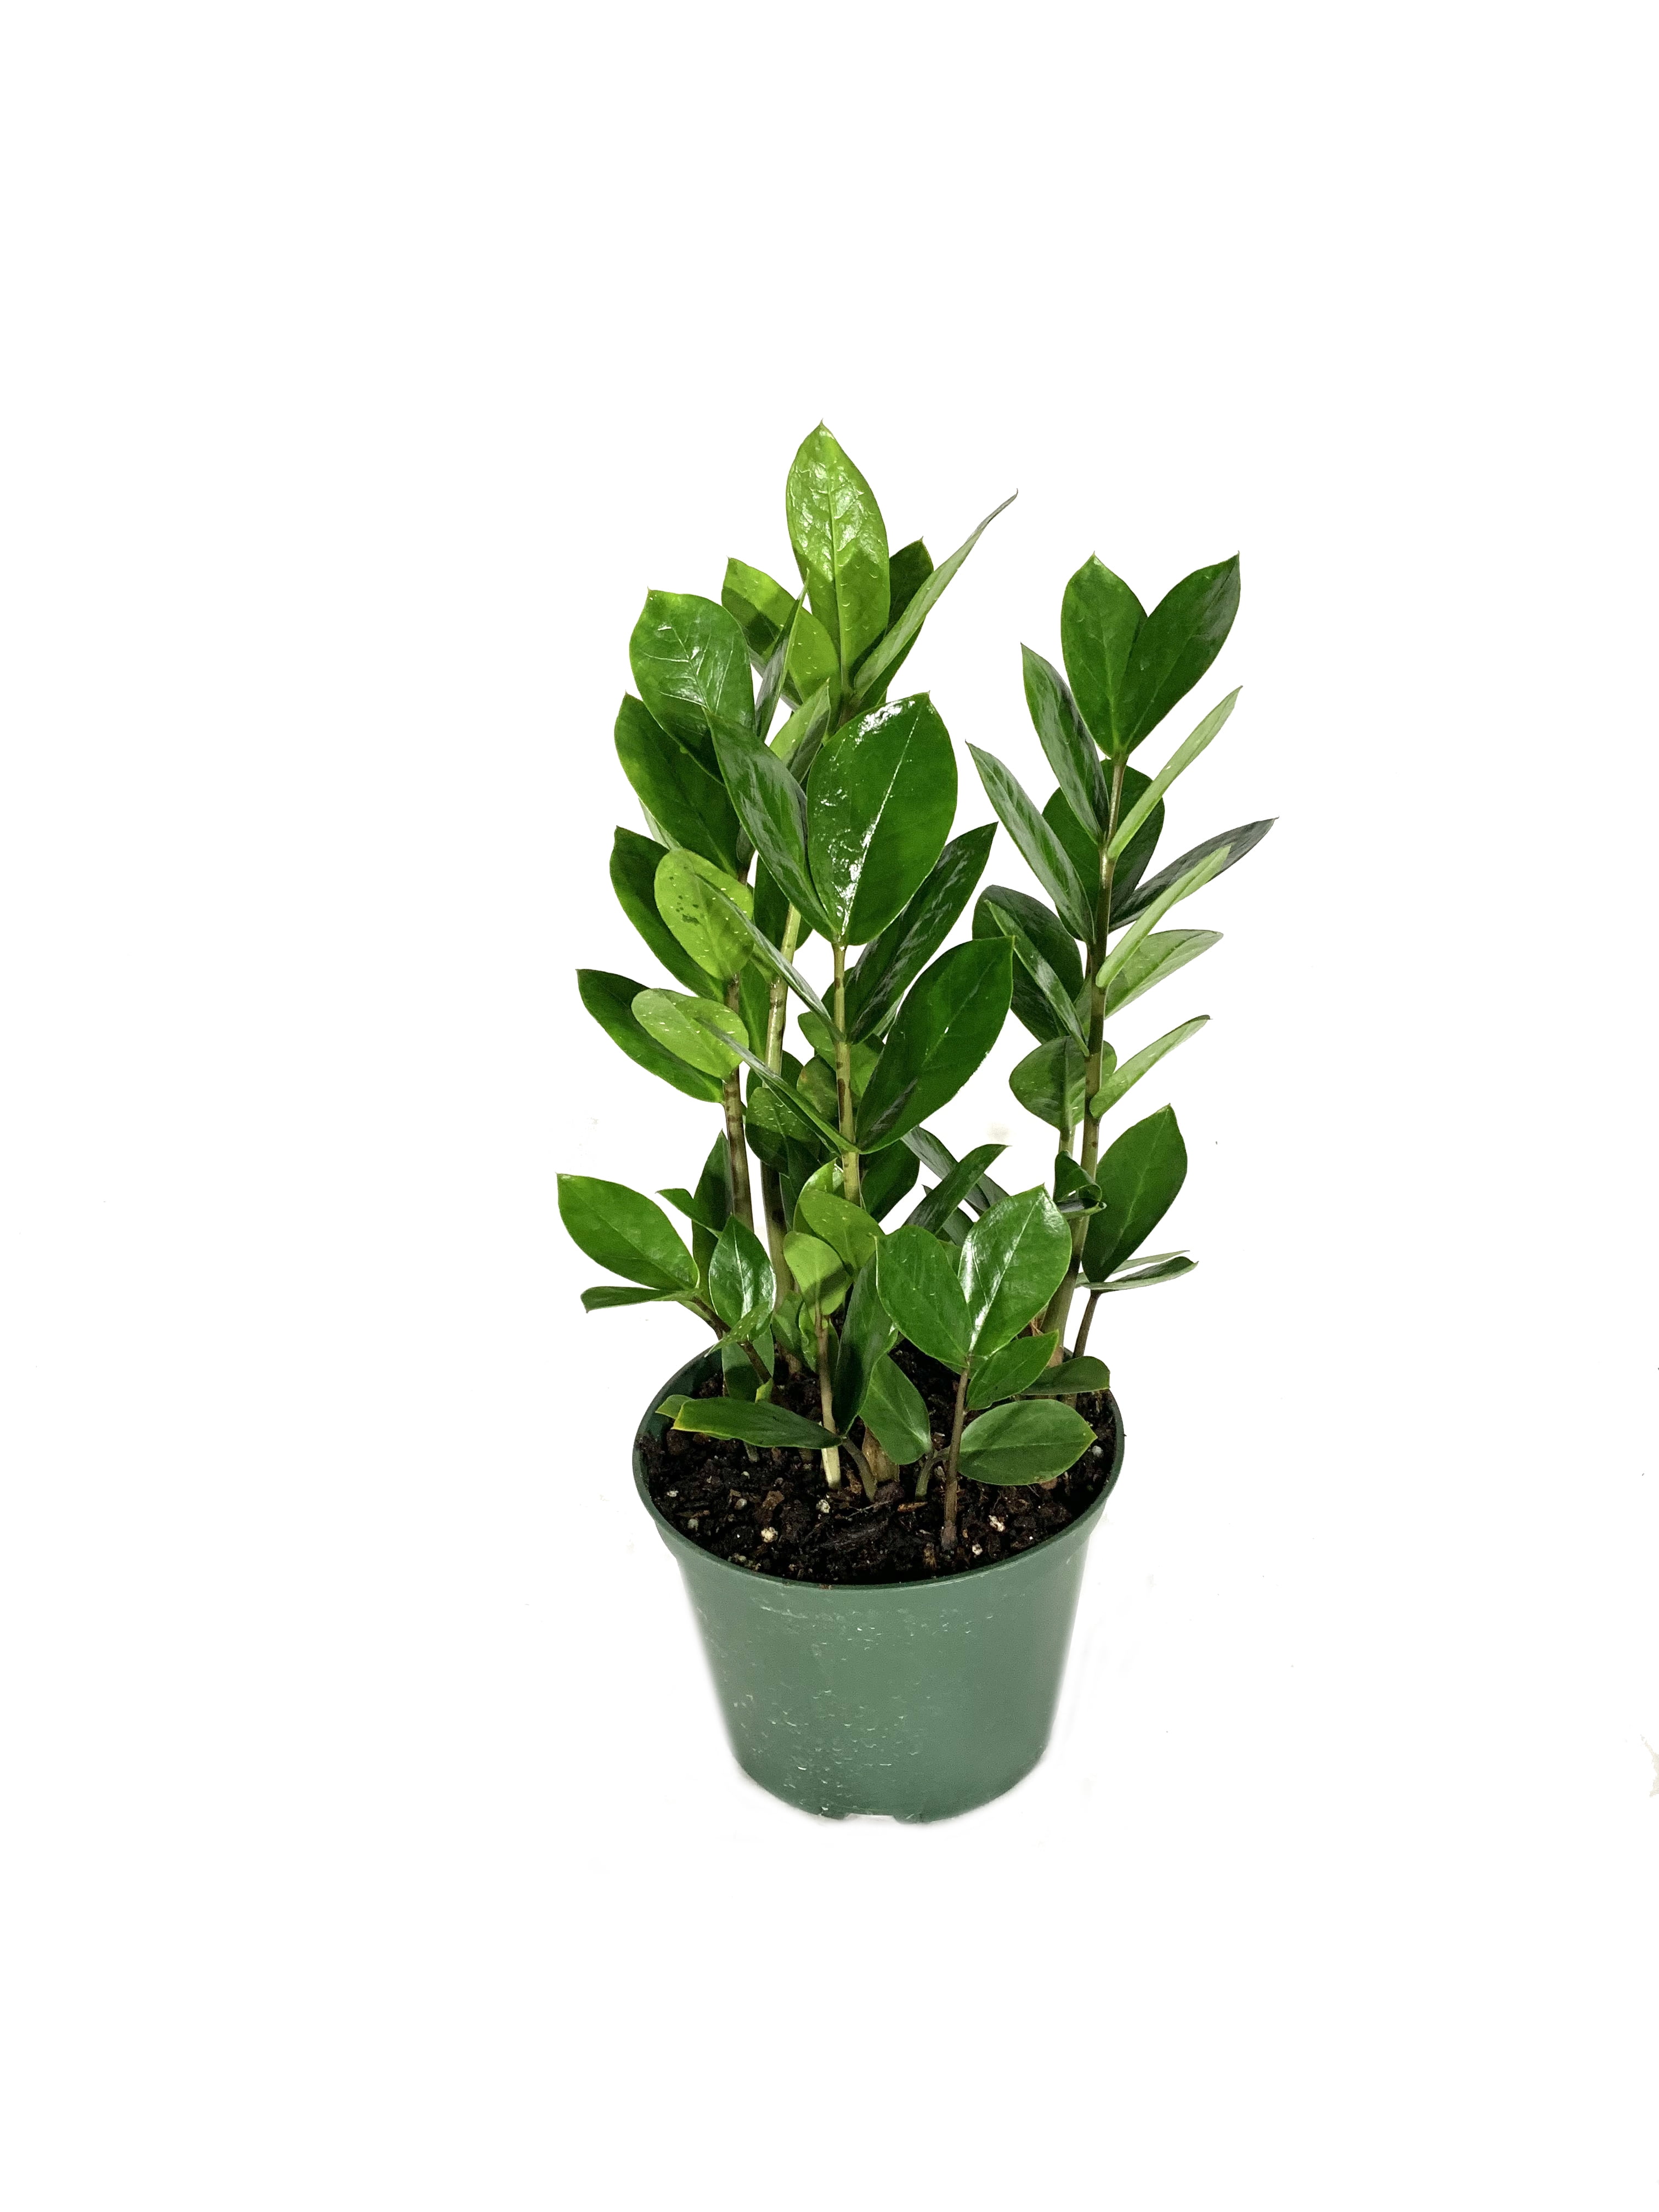 Wekiva Foliage - ZZ Plant - Live Plant in a 6 inch Pot - Zamioculcas ...